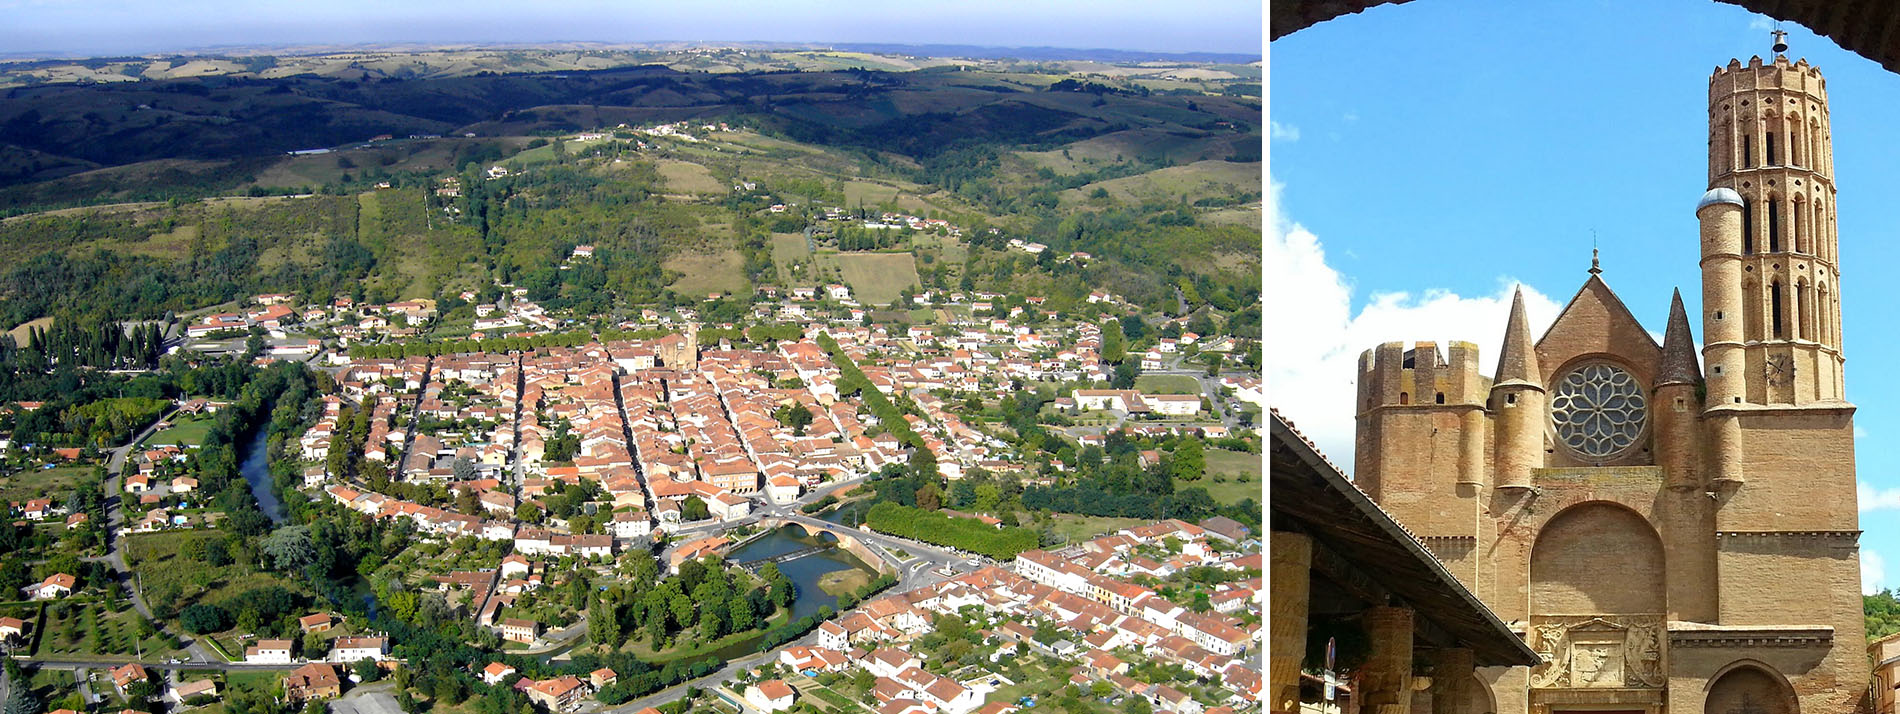 Montesquieu-Volvestre, l'un des plus beaux villages de Haute-Garonne